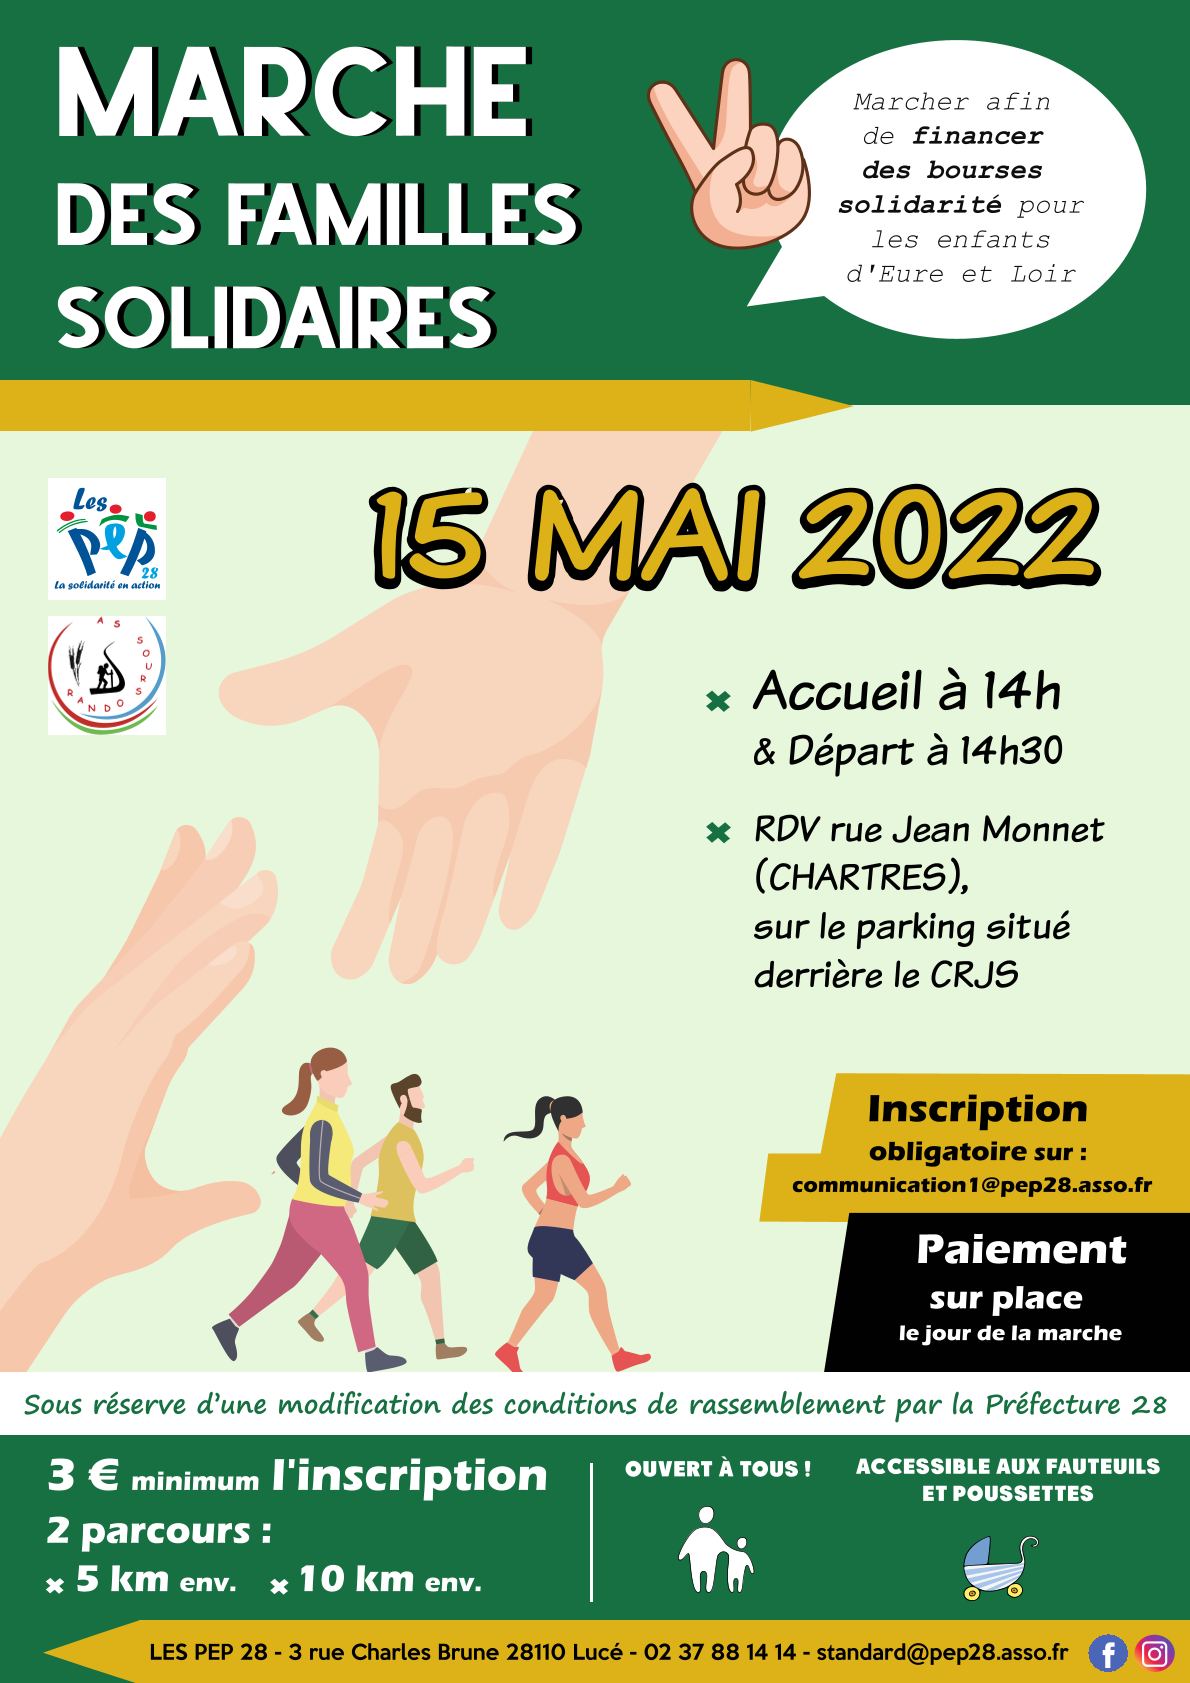 Marche solidaire le 15 mai 2022